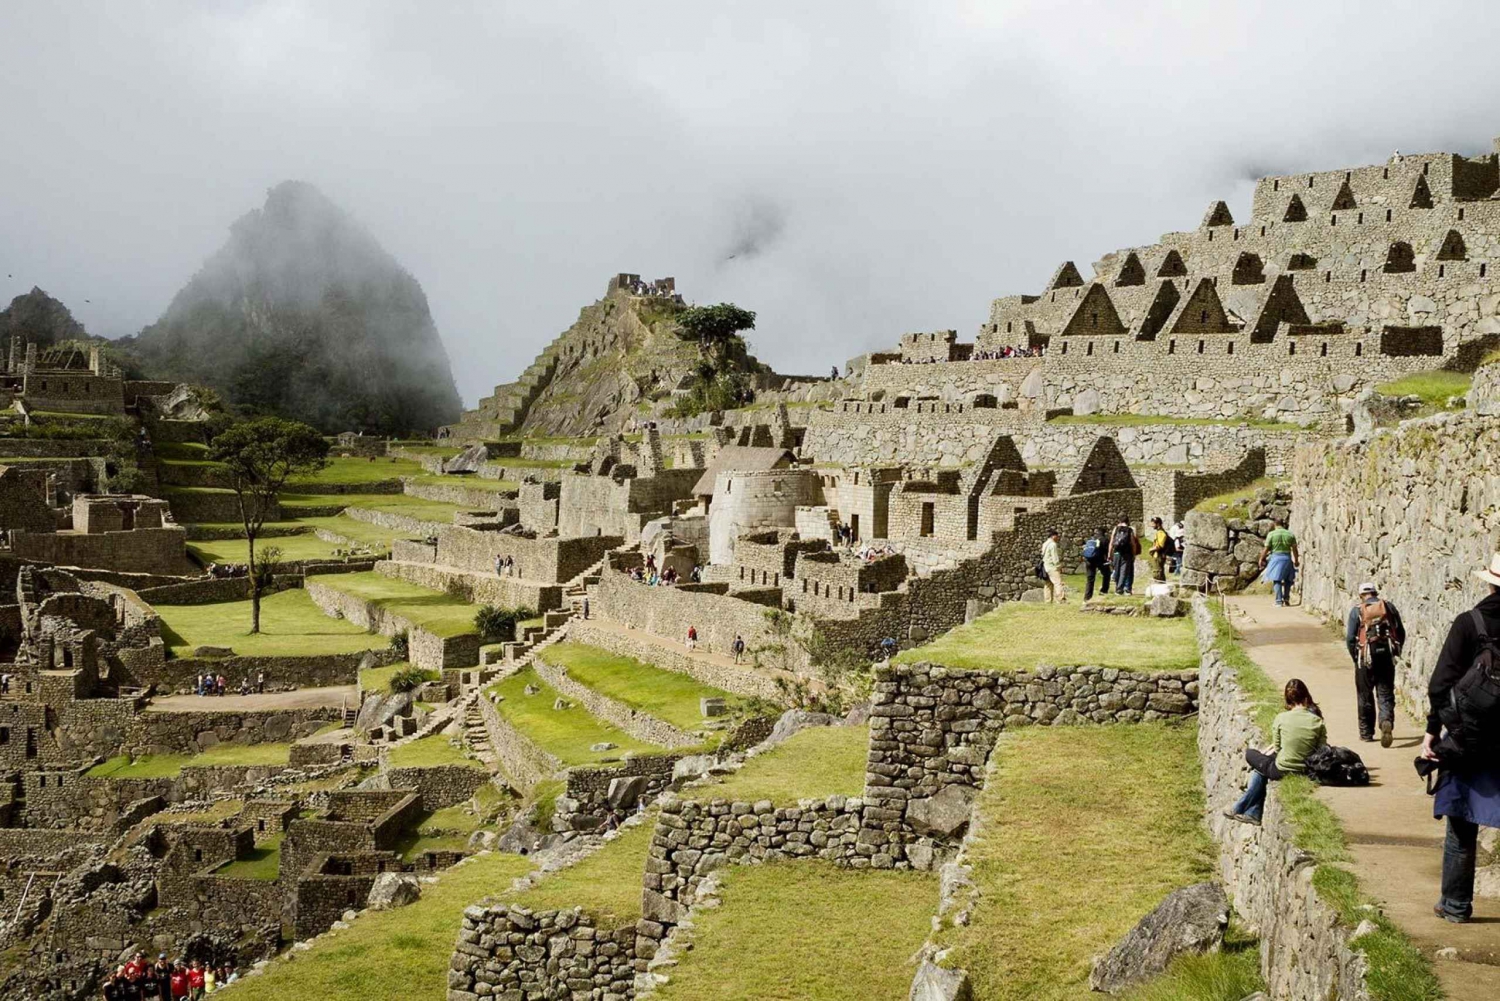 Ganztagestour nach Machu Picchu mit dem Expeditions- oder Voyager-Zug